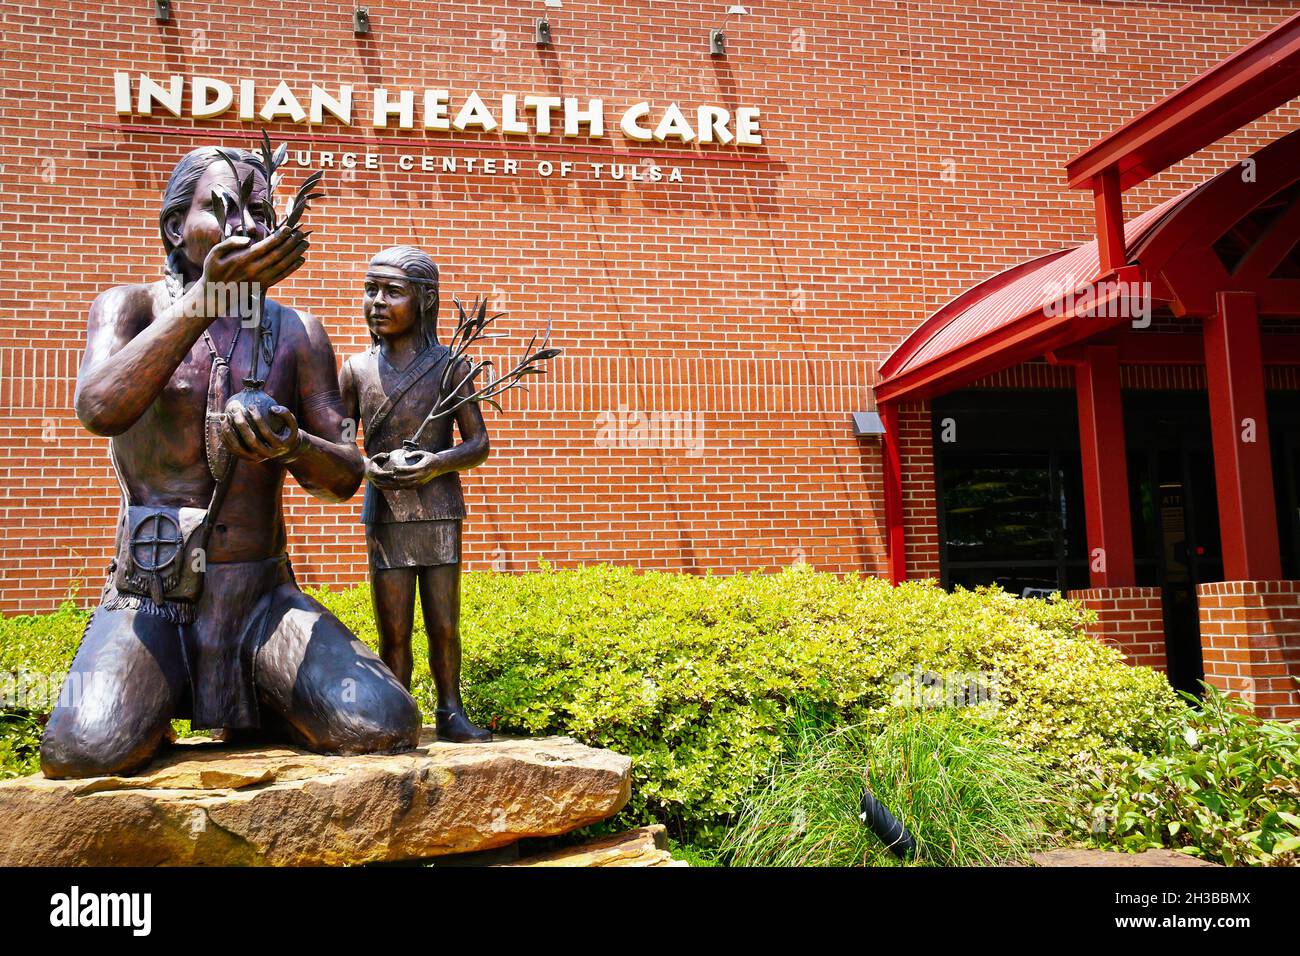 07-20-2021 Tulsa OK USA Statuen von indischen Männern und Kindern, die Bäume vor dem indischen Gesundheitszentrum Pflanzen. Stockfoto